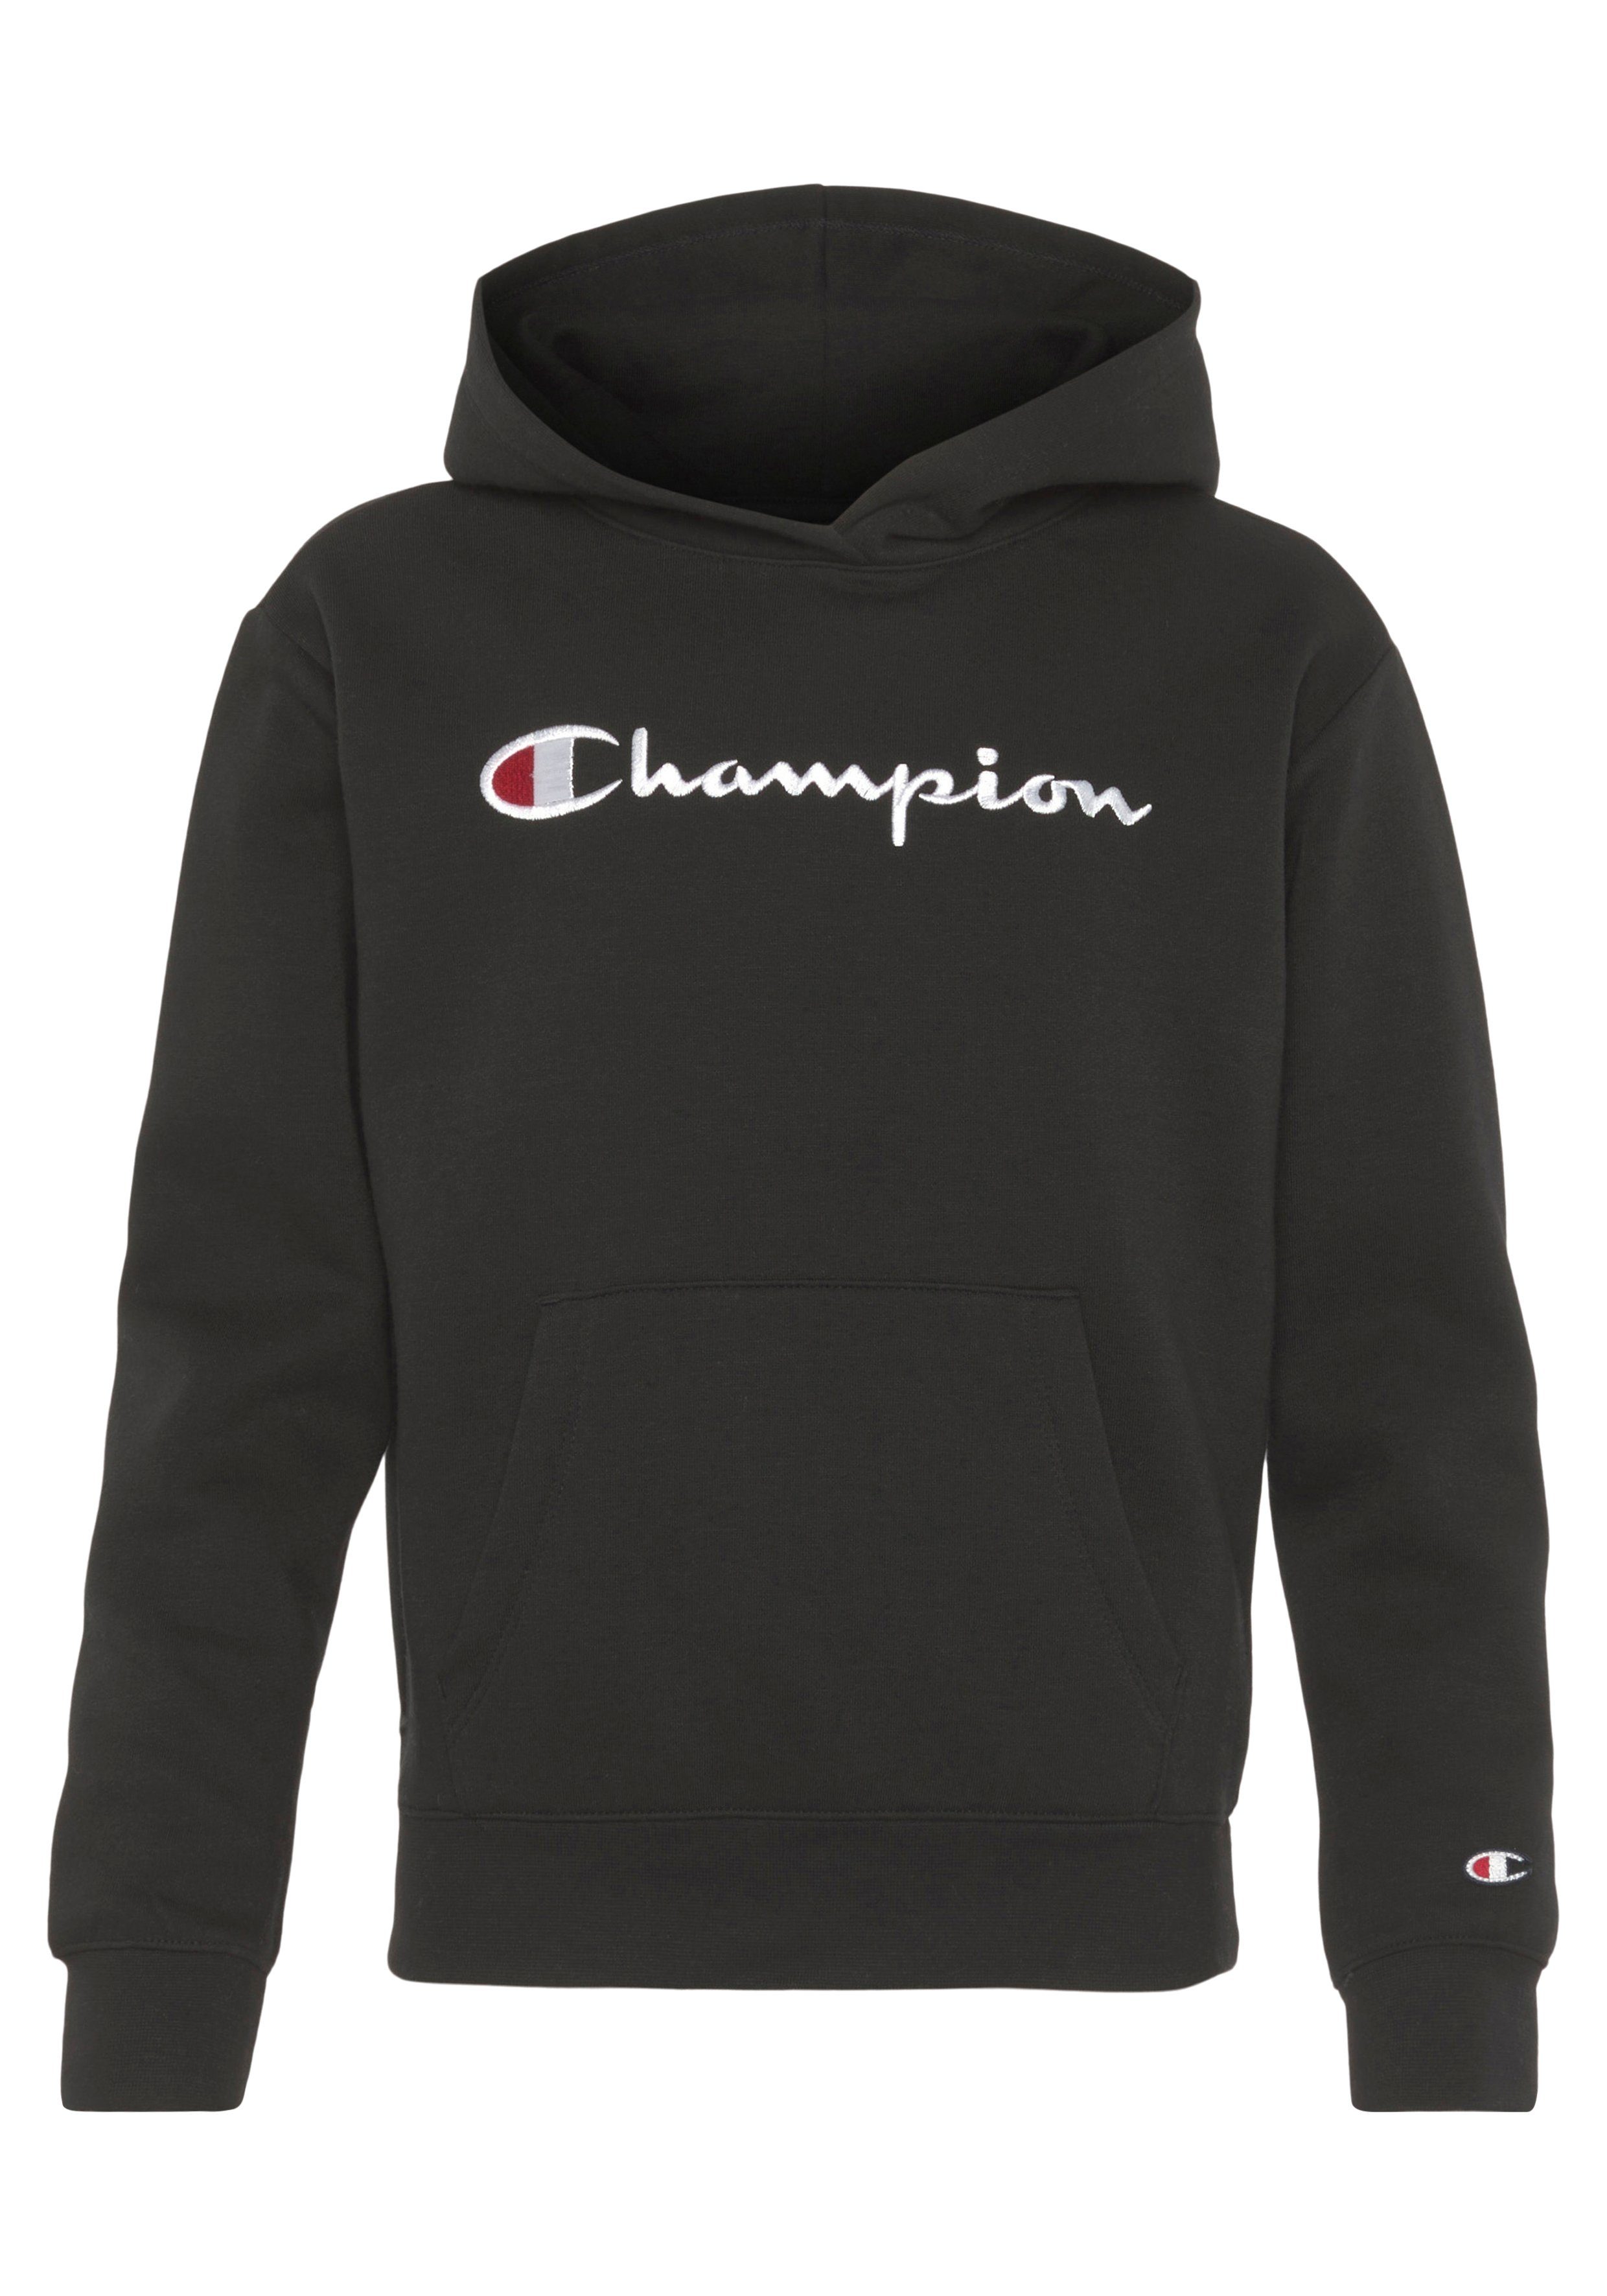 Champion Sweatshirt Classic Hooded Kinder schwarz large Logo - für Sweatshirt